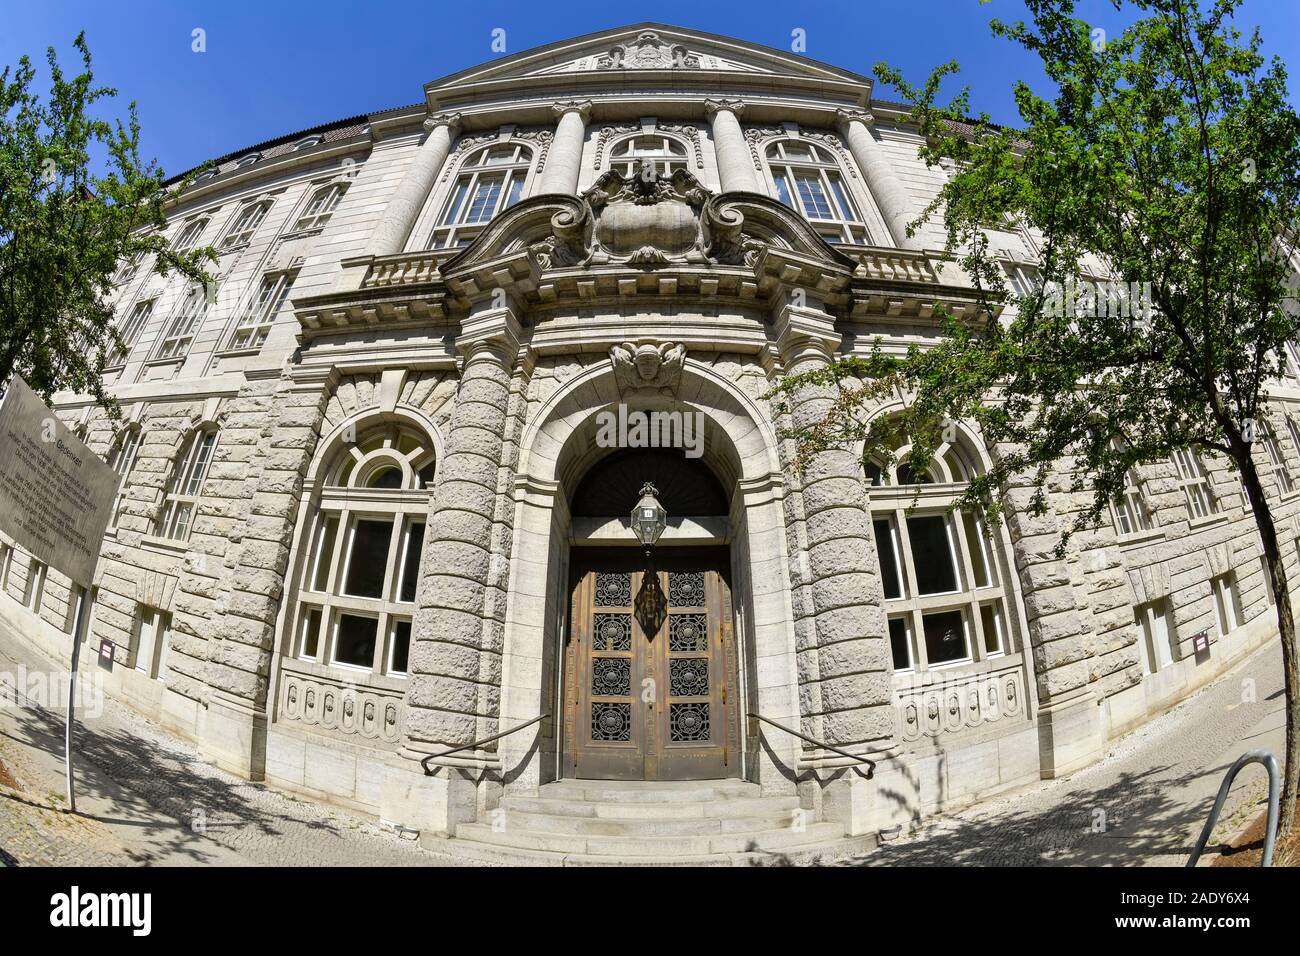 Ehemaliges Reichskriegsgericht, Witzlebenstraße 4 - 10, Charlottenburg, Berlin, Deutschland Stock Photo